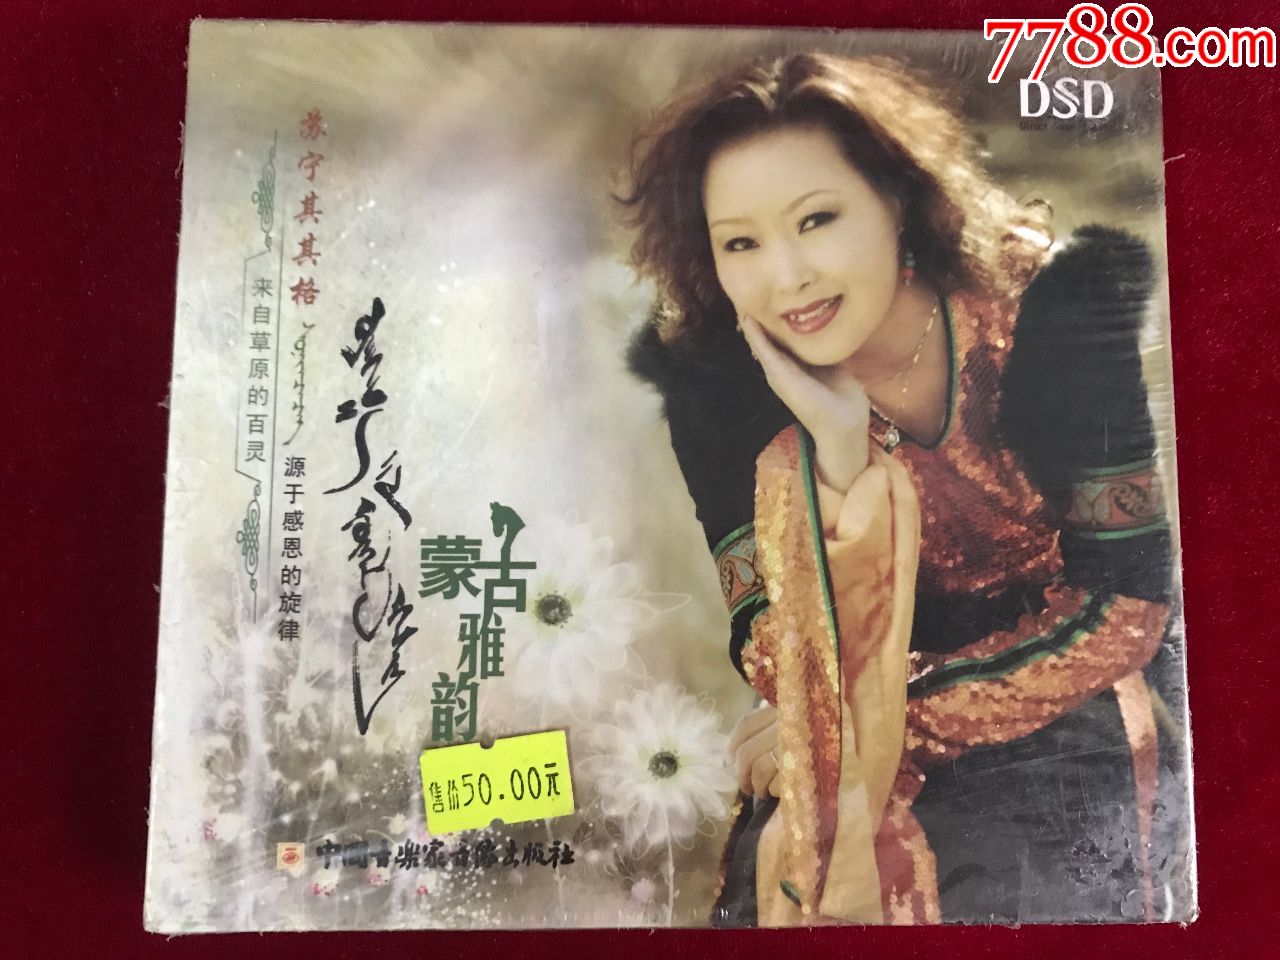 蒙古族歌手苏宁其其格演唱专辑《蒙古雅韵》cd